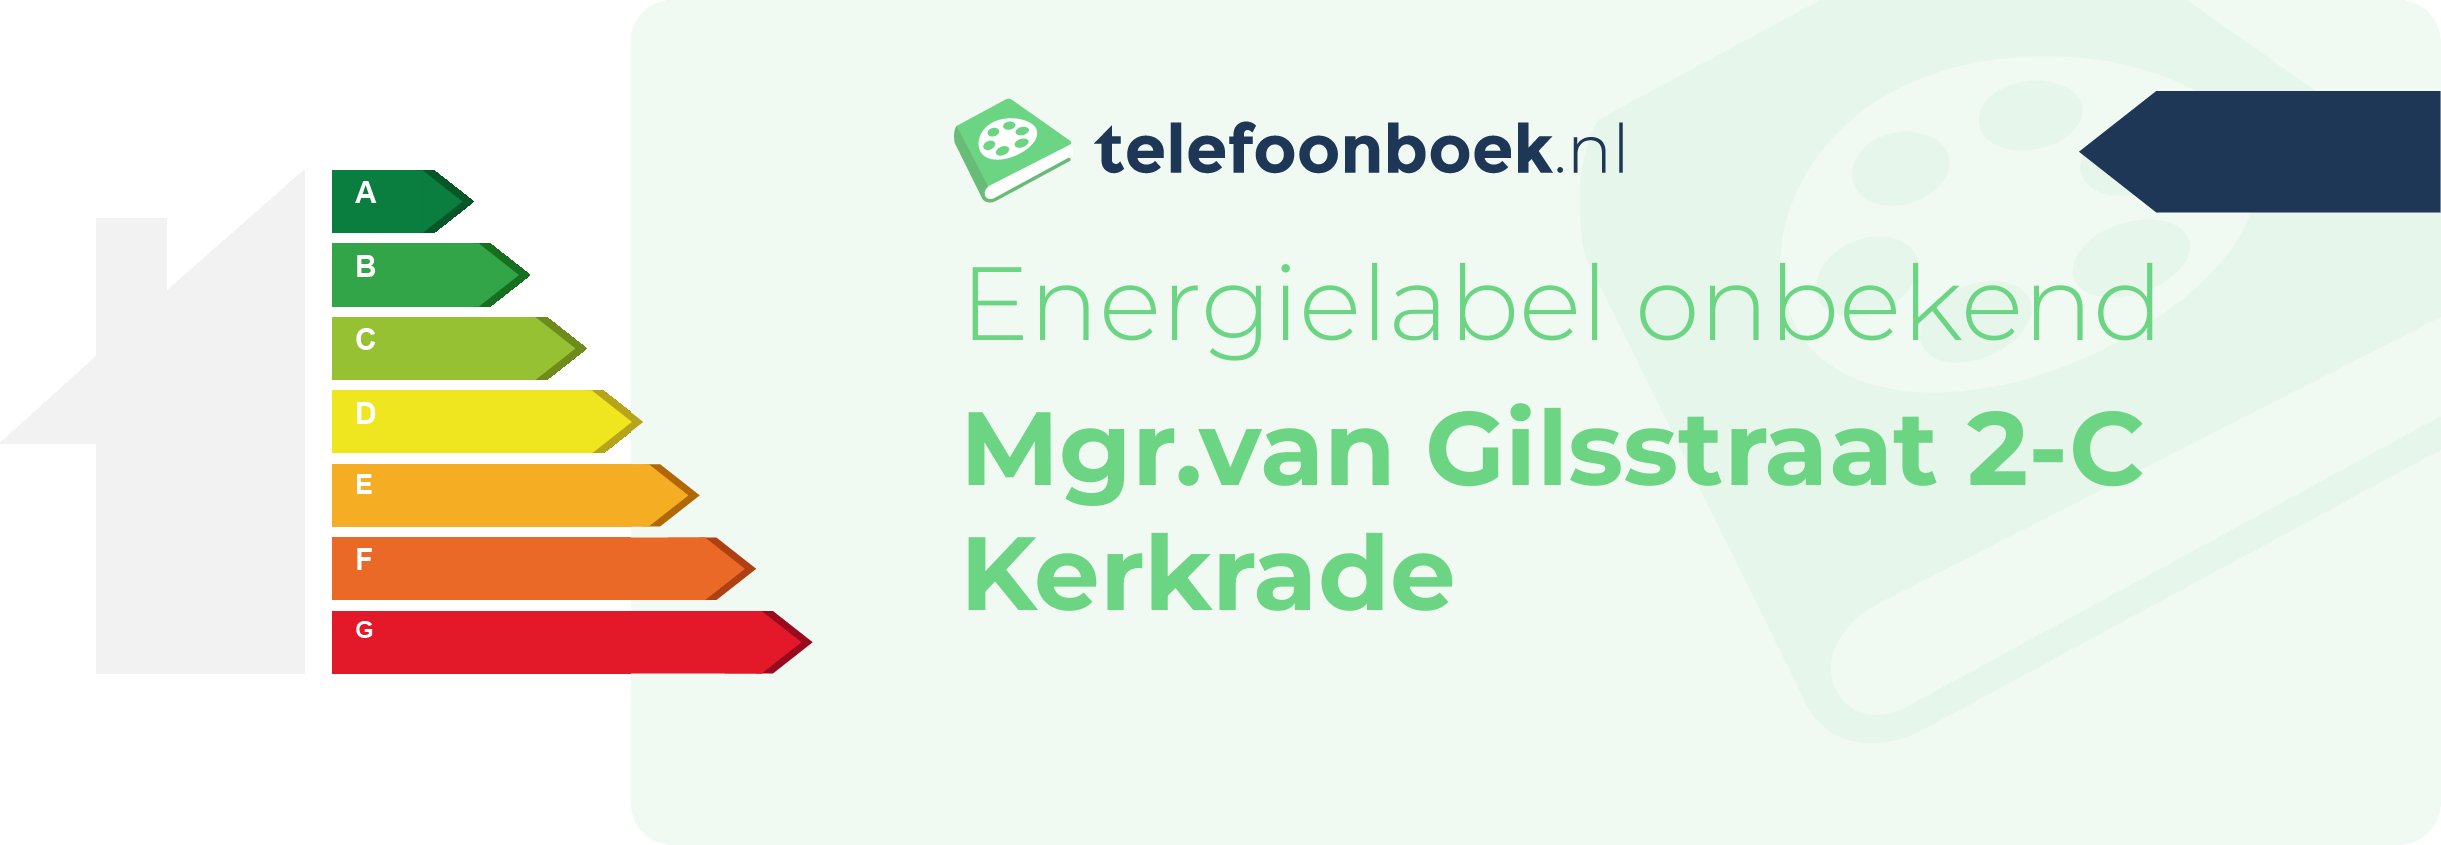 Energielabel Mgr.van Gilsstraat 2-C Kerkrade